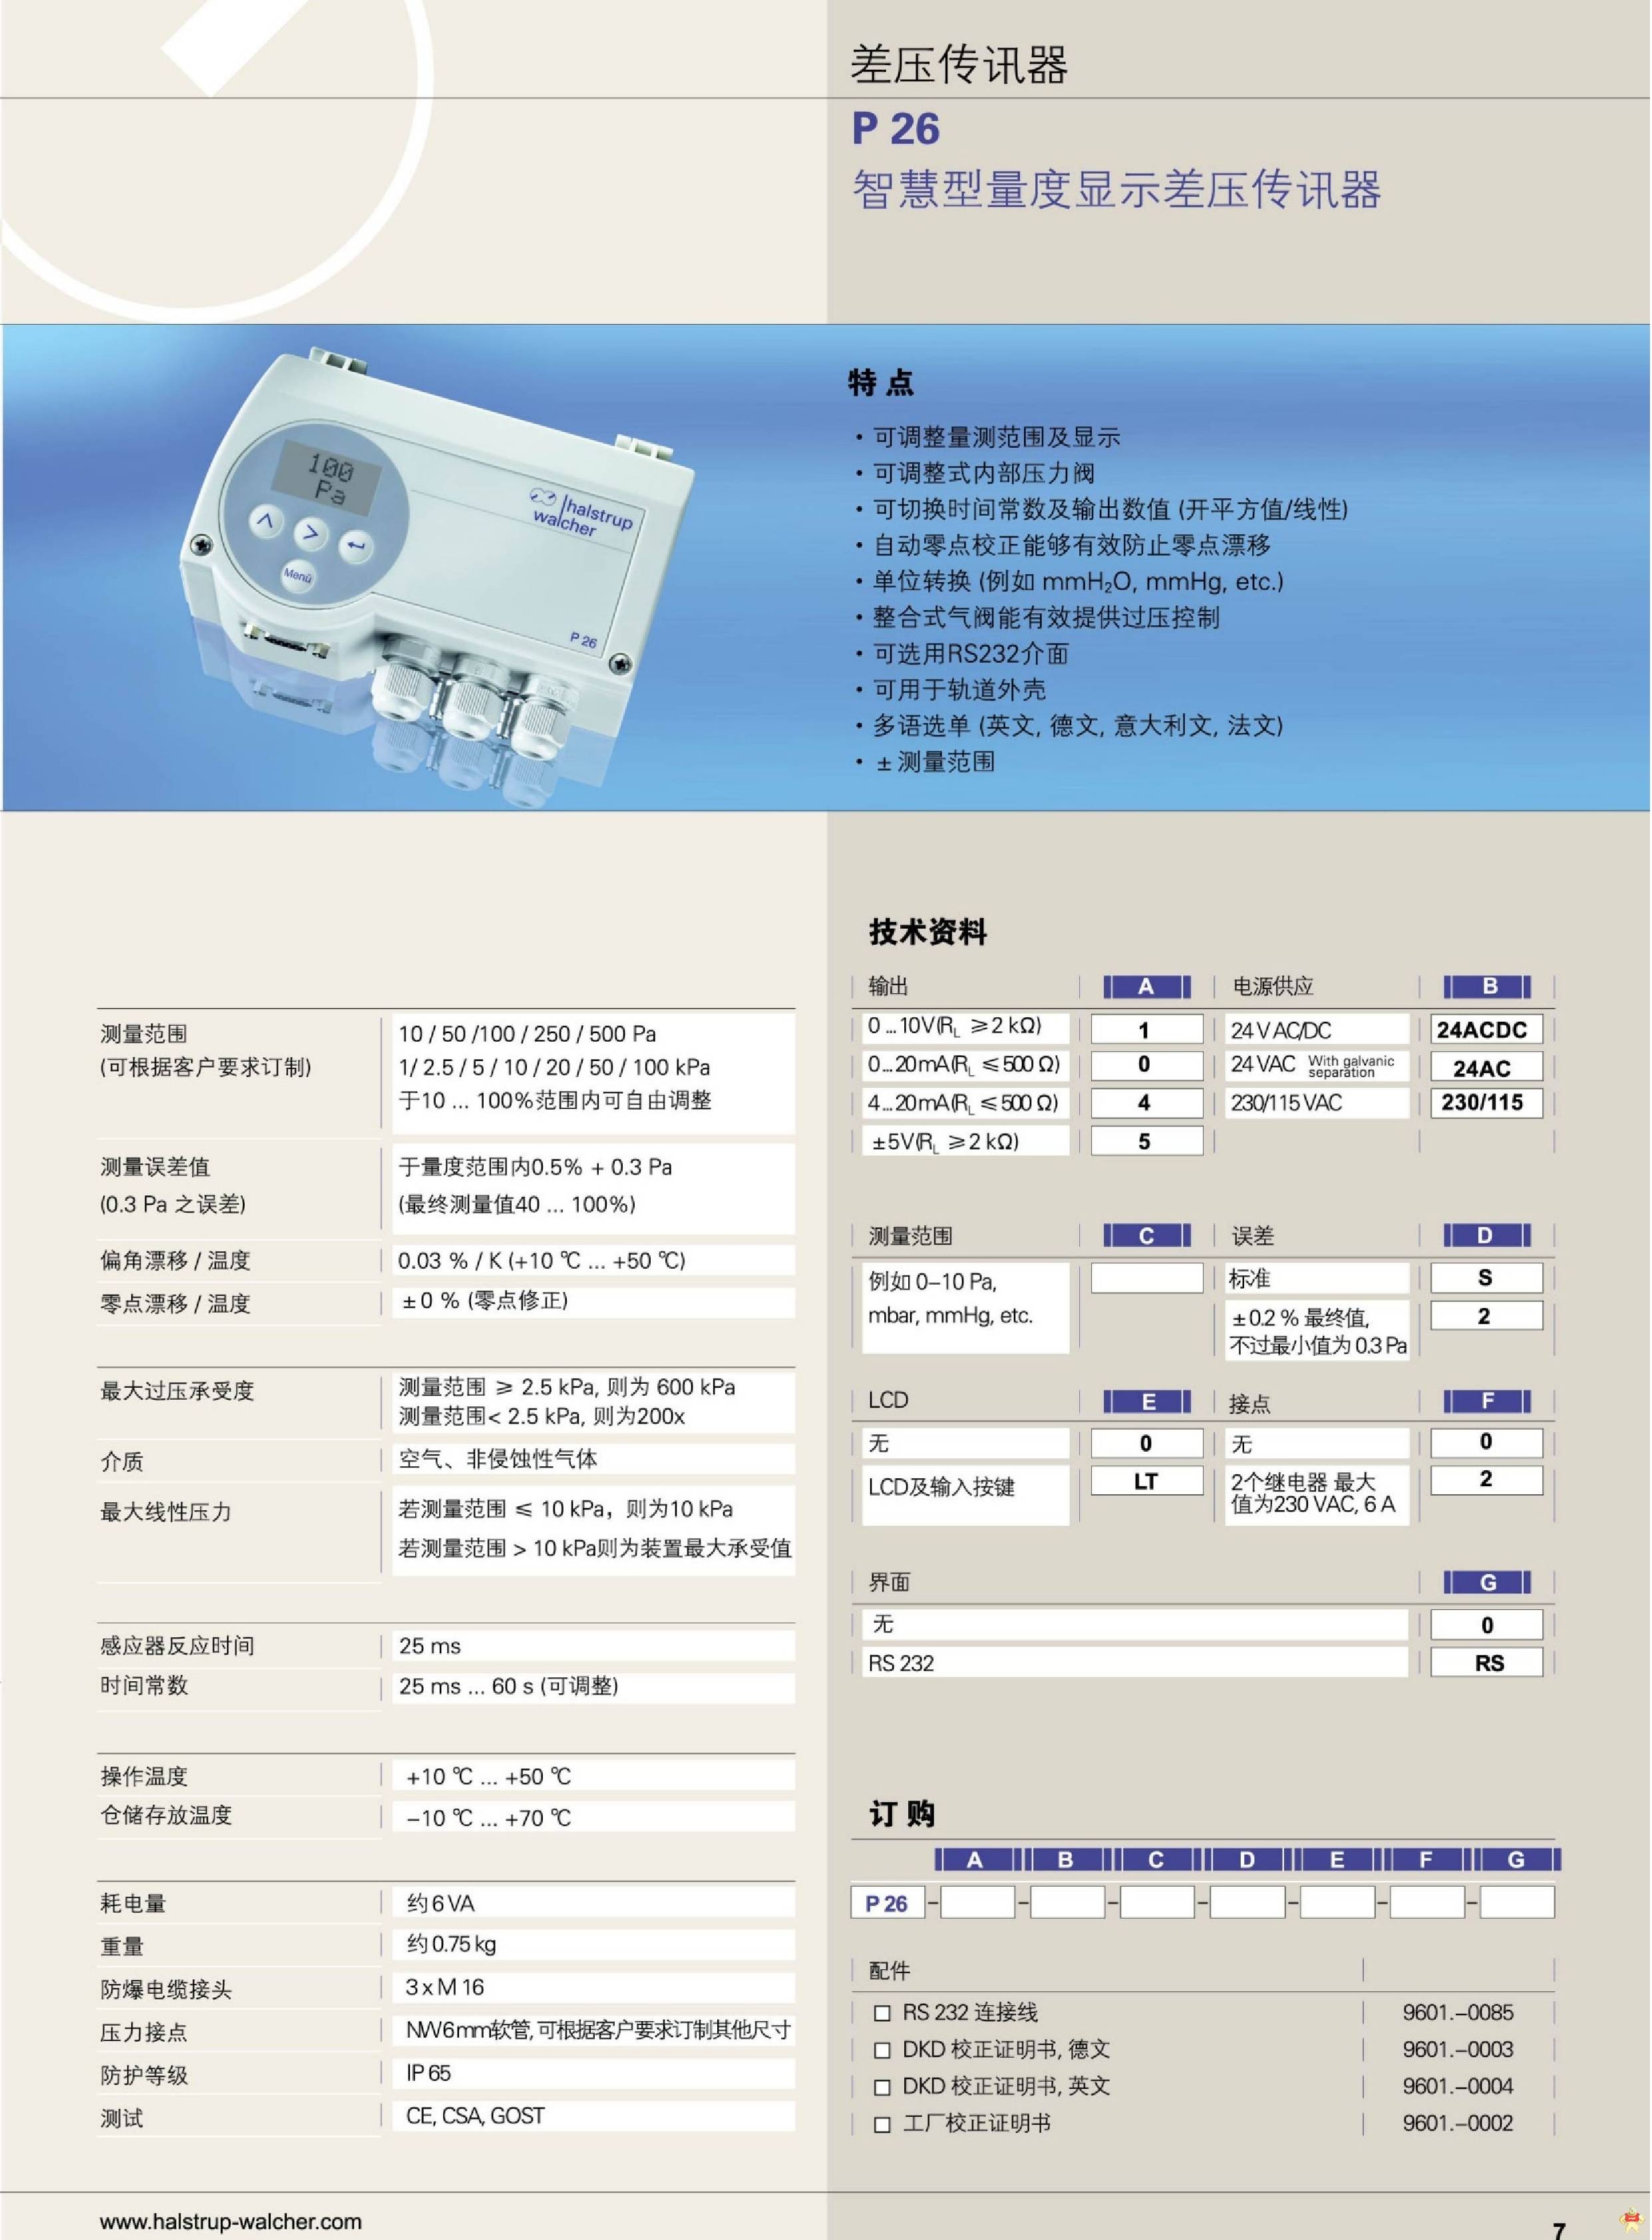 上海供应德国原装Halstrup-Walcher智慧型量度显示差压传讯器P26 德国微差压,压力传讯器,P26,哈斯瓦榭,差压传感器